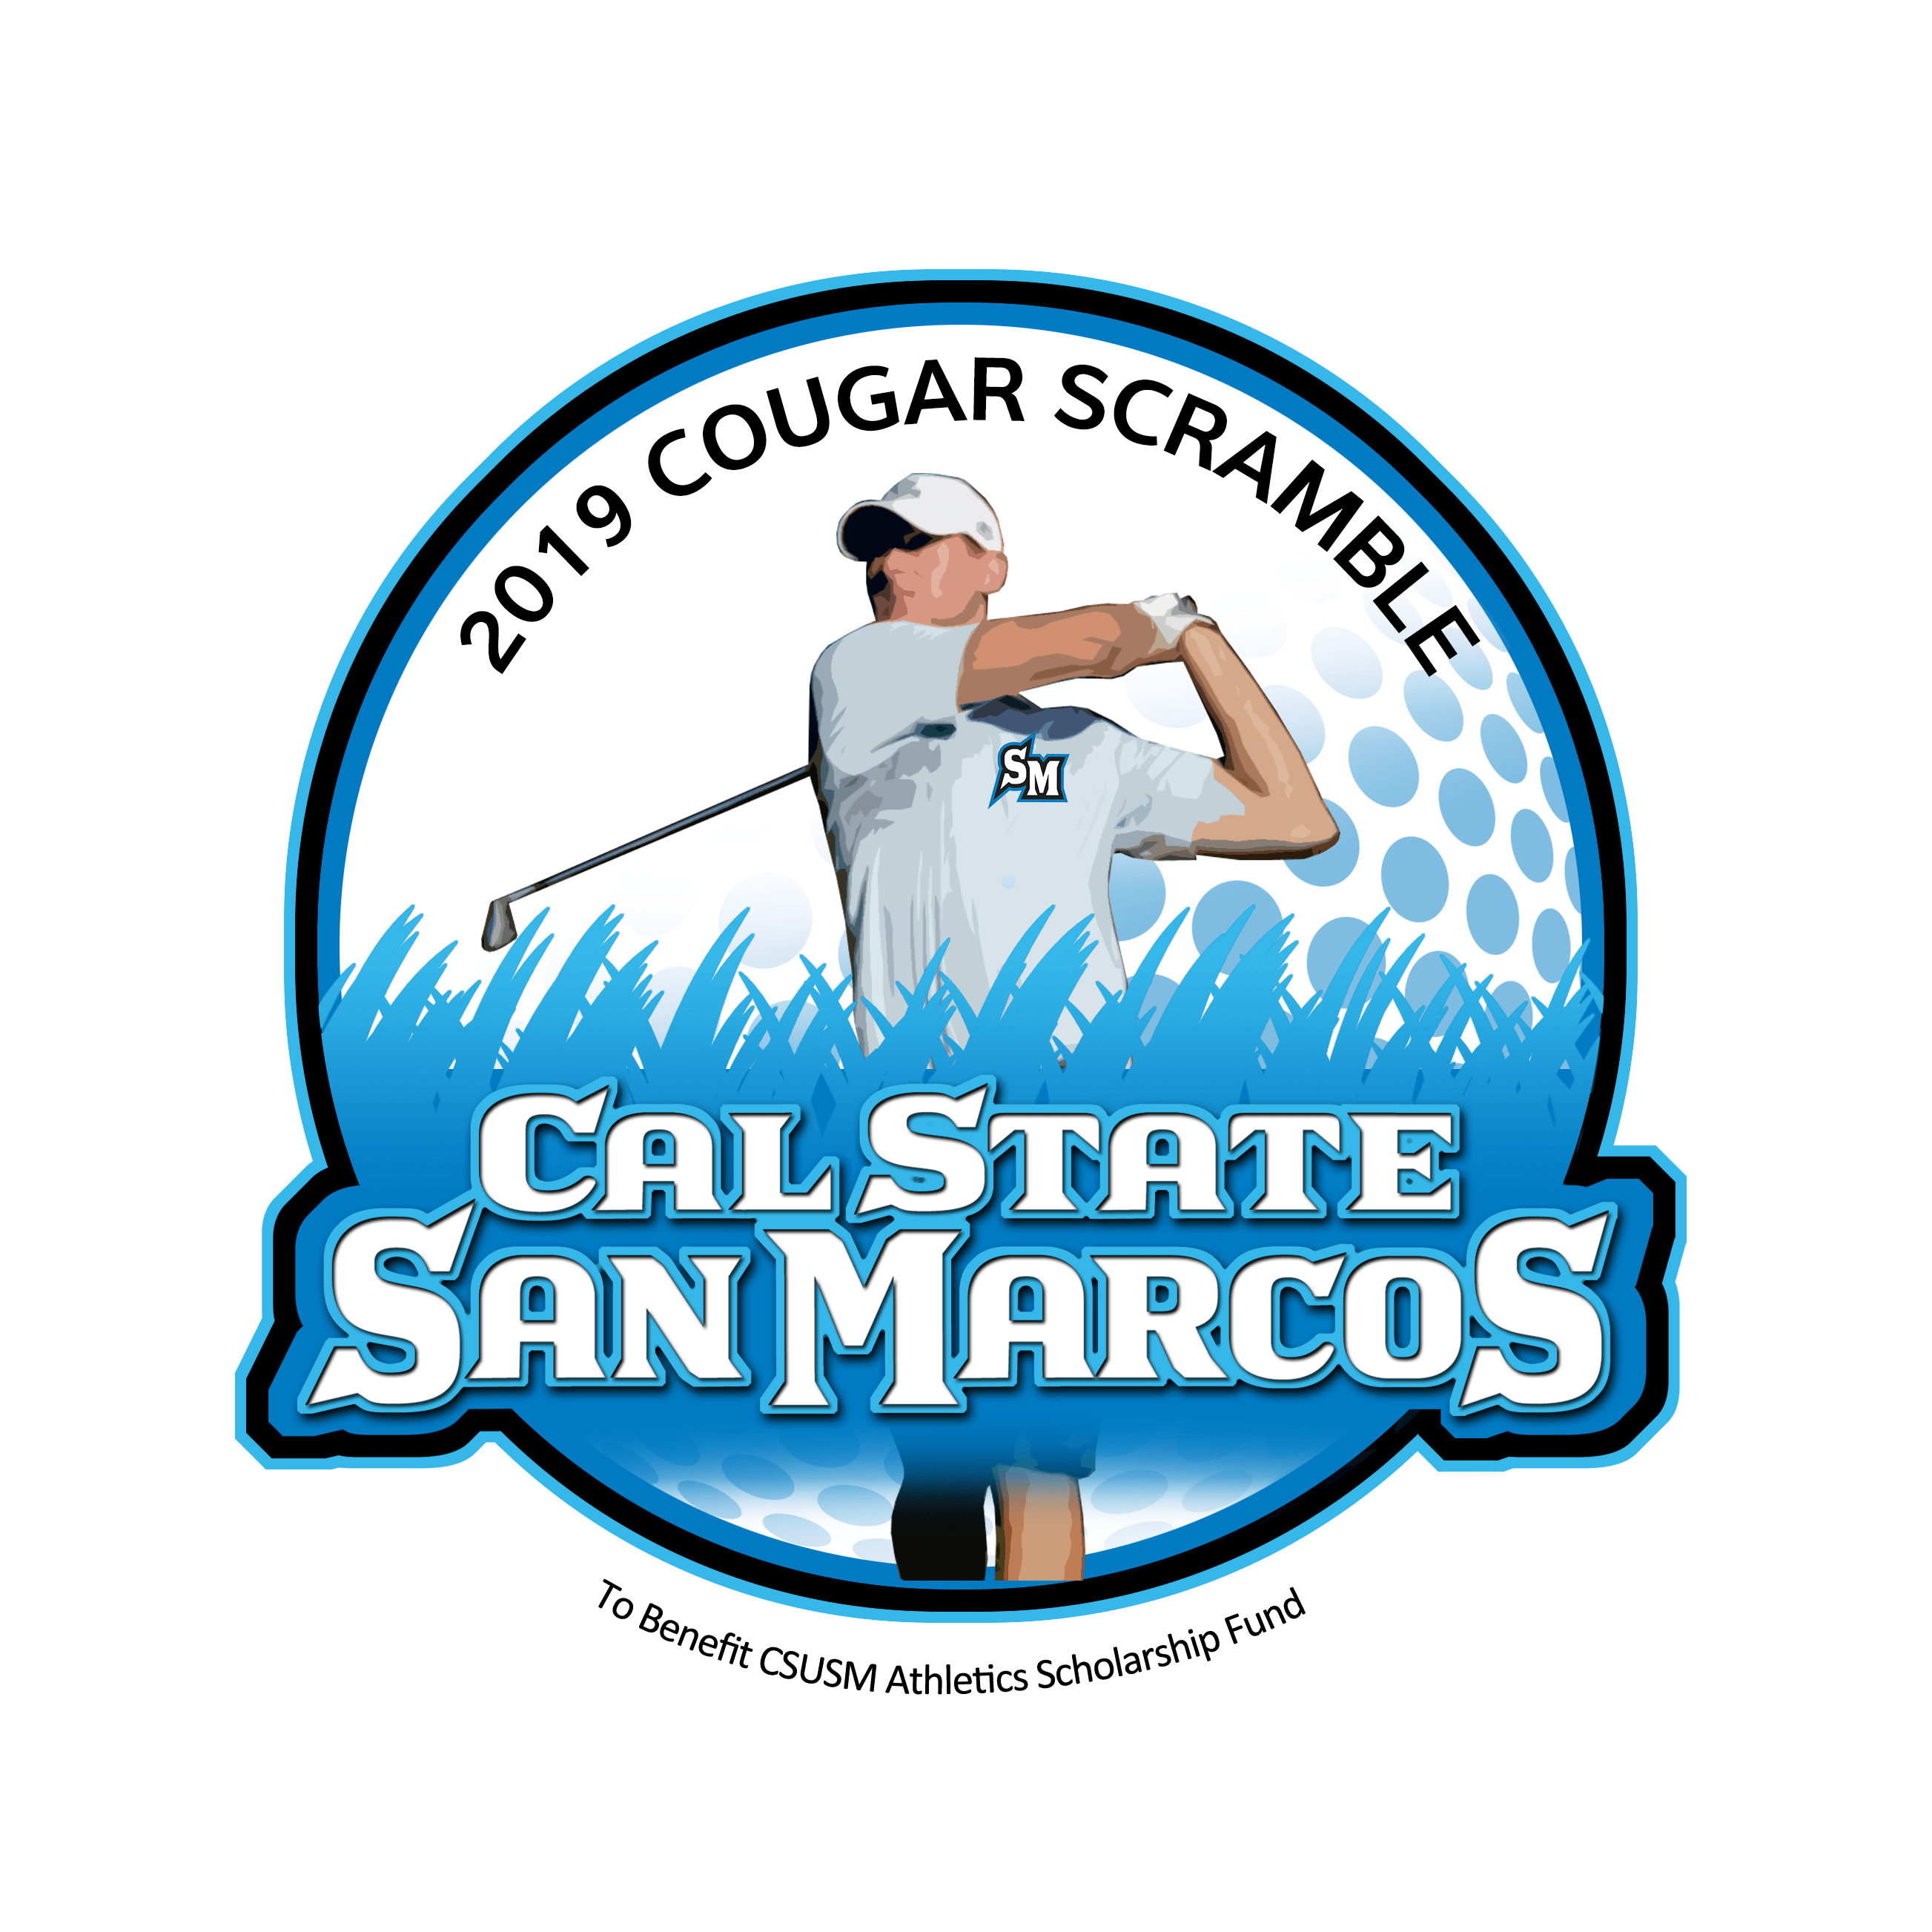 CSUSM Logo - CSU - 2019 CSUSM Cougar Scramble